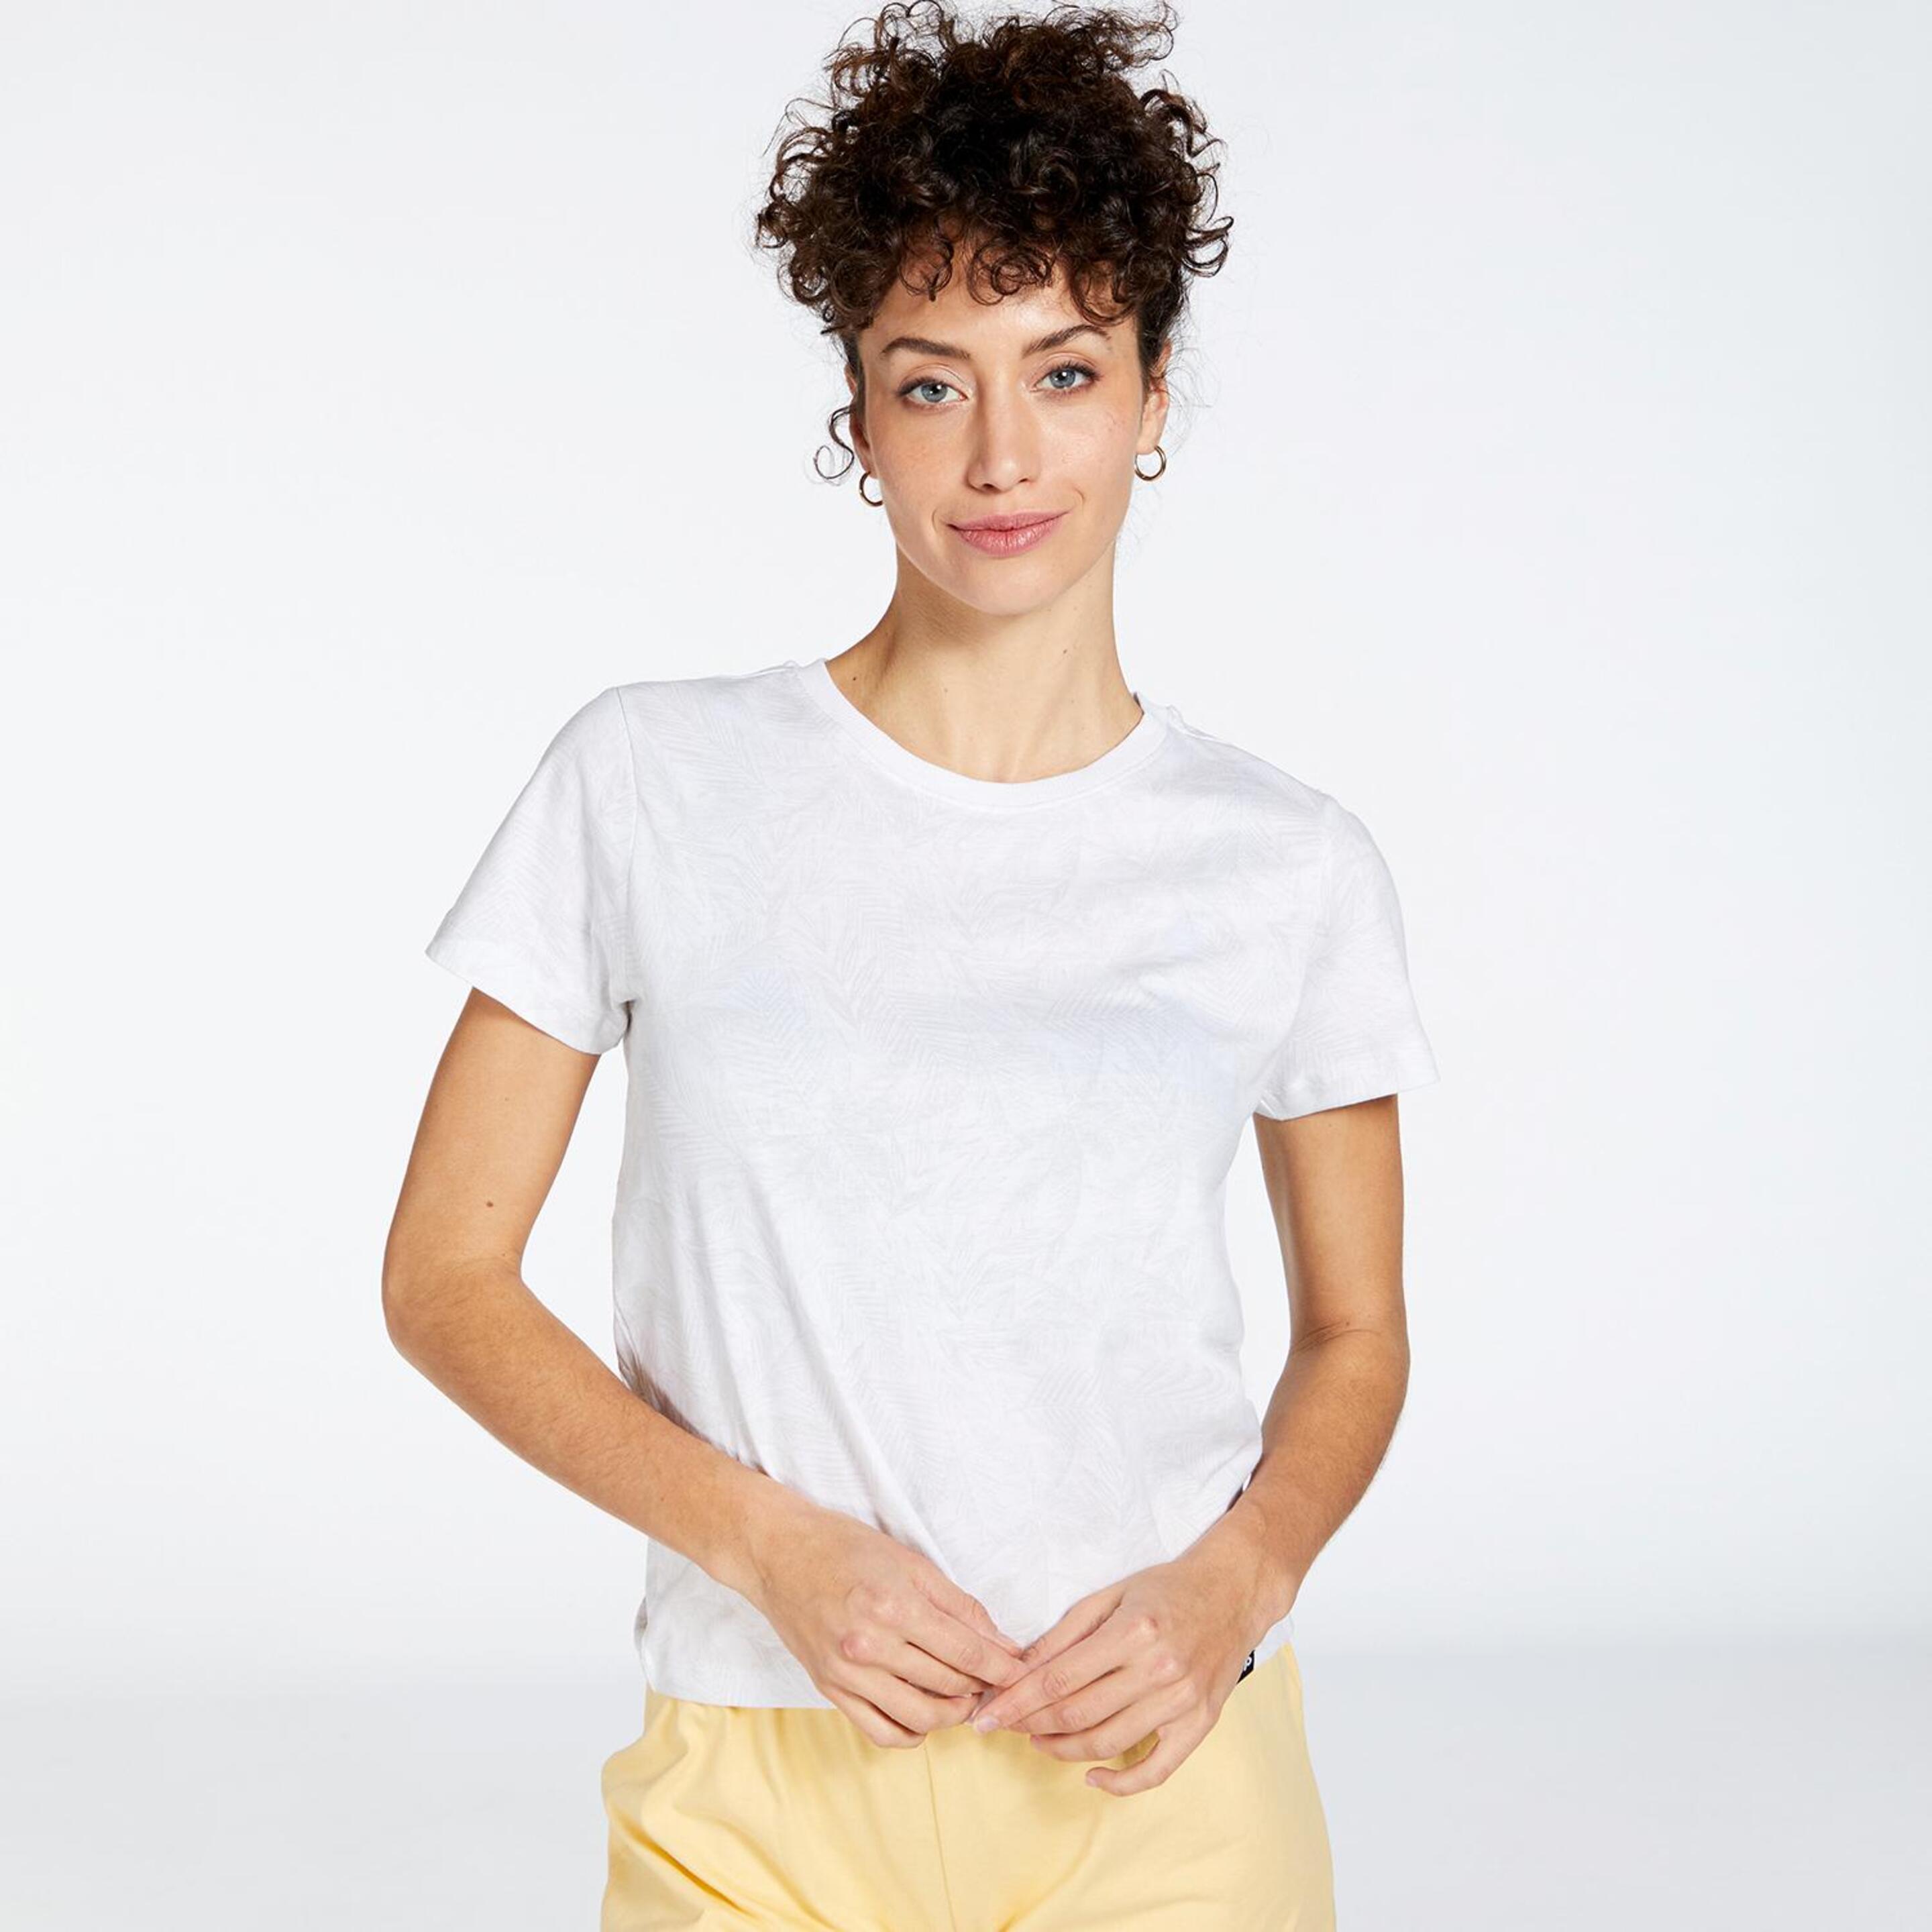 Up Basic - blanco - Camiseta Mujer